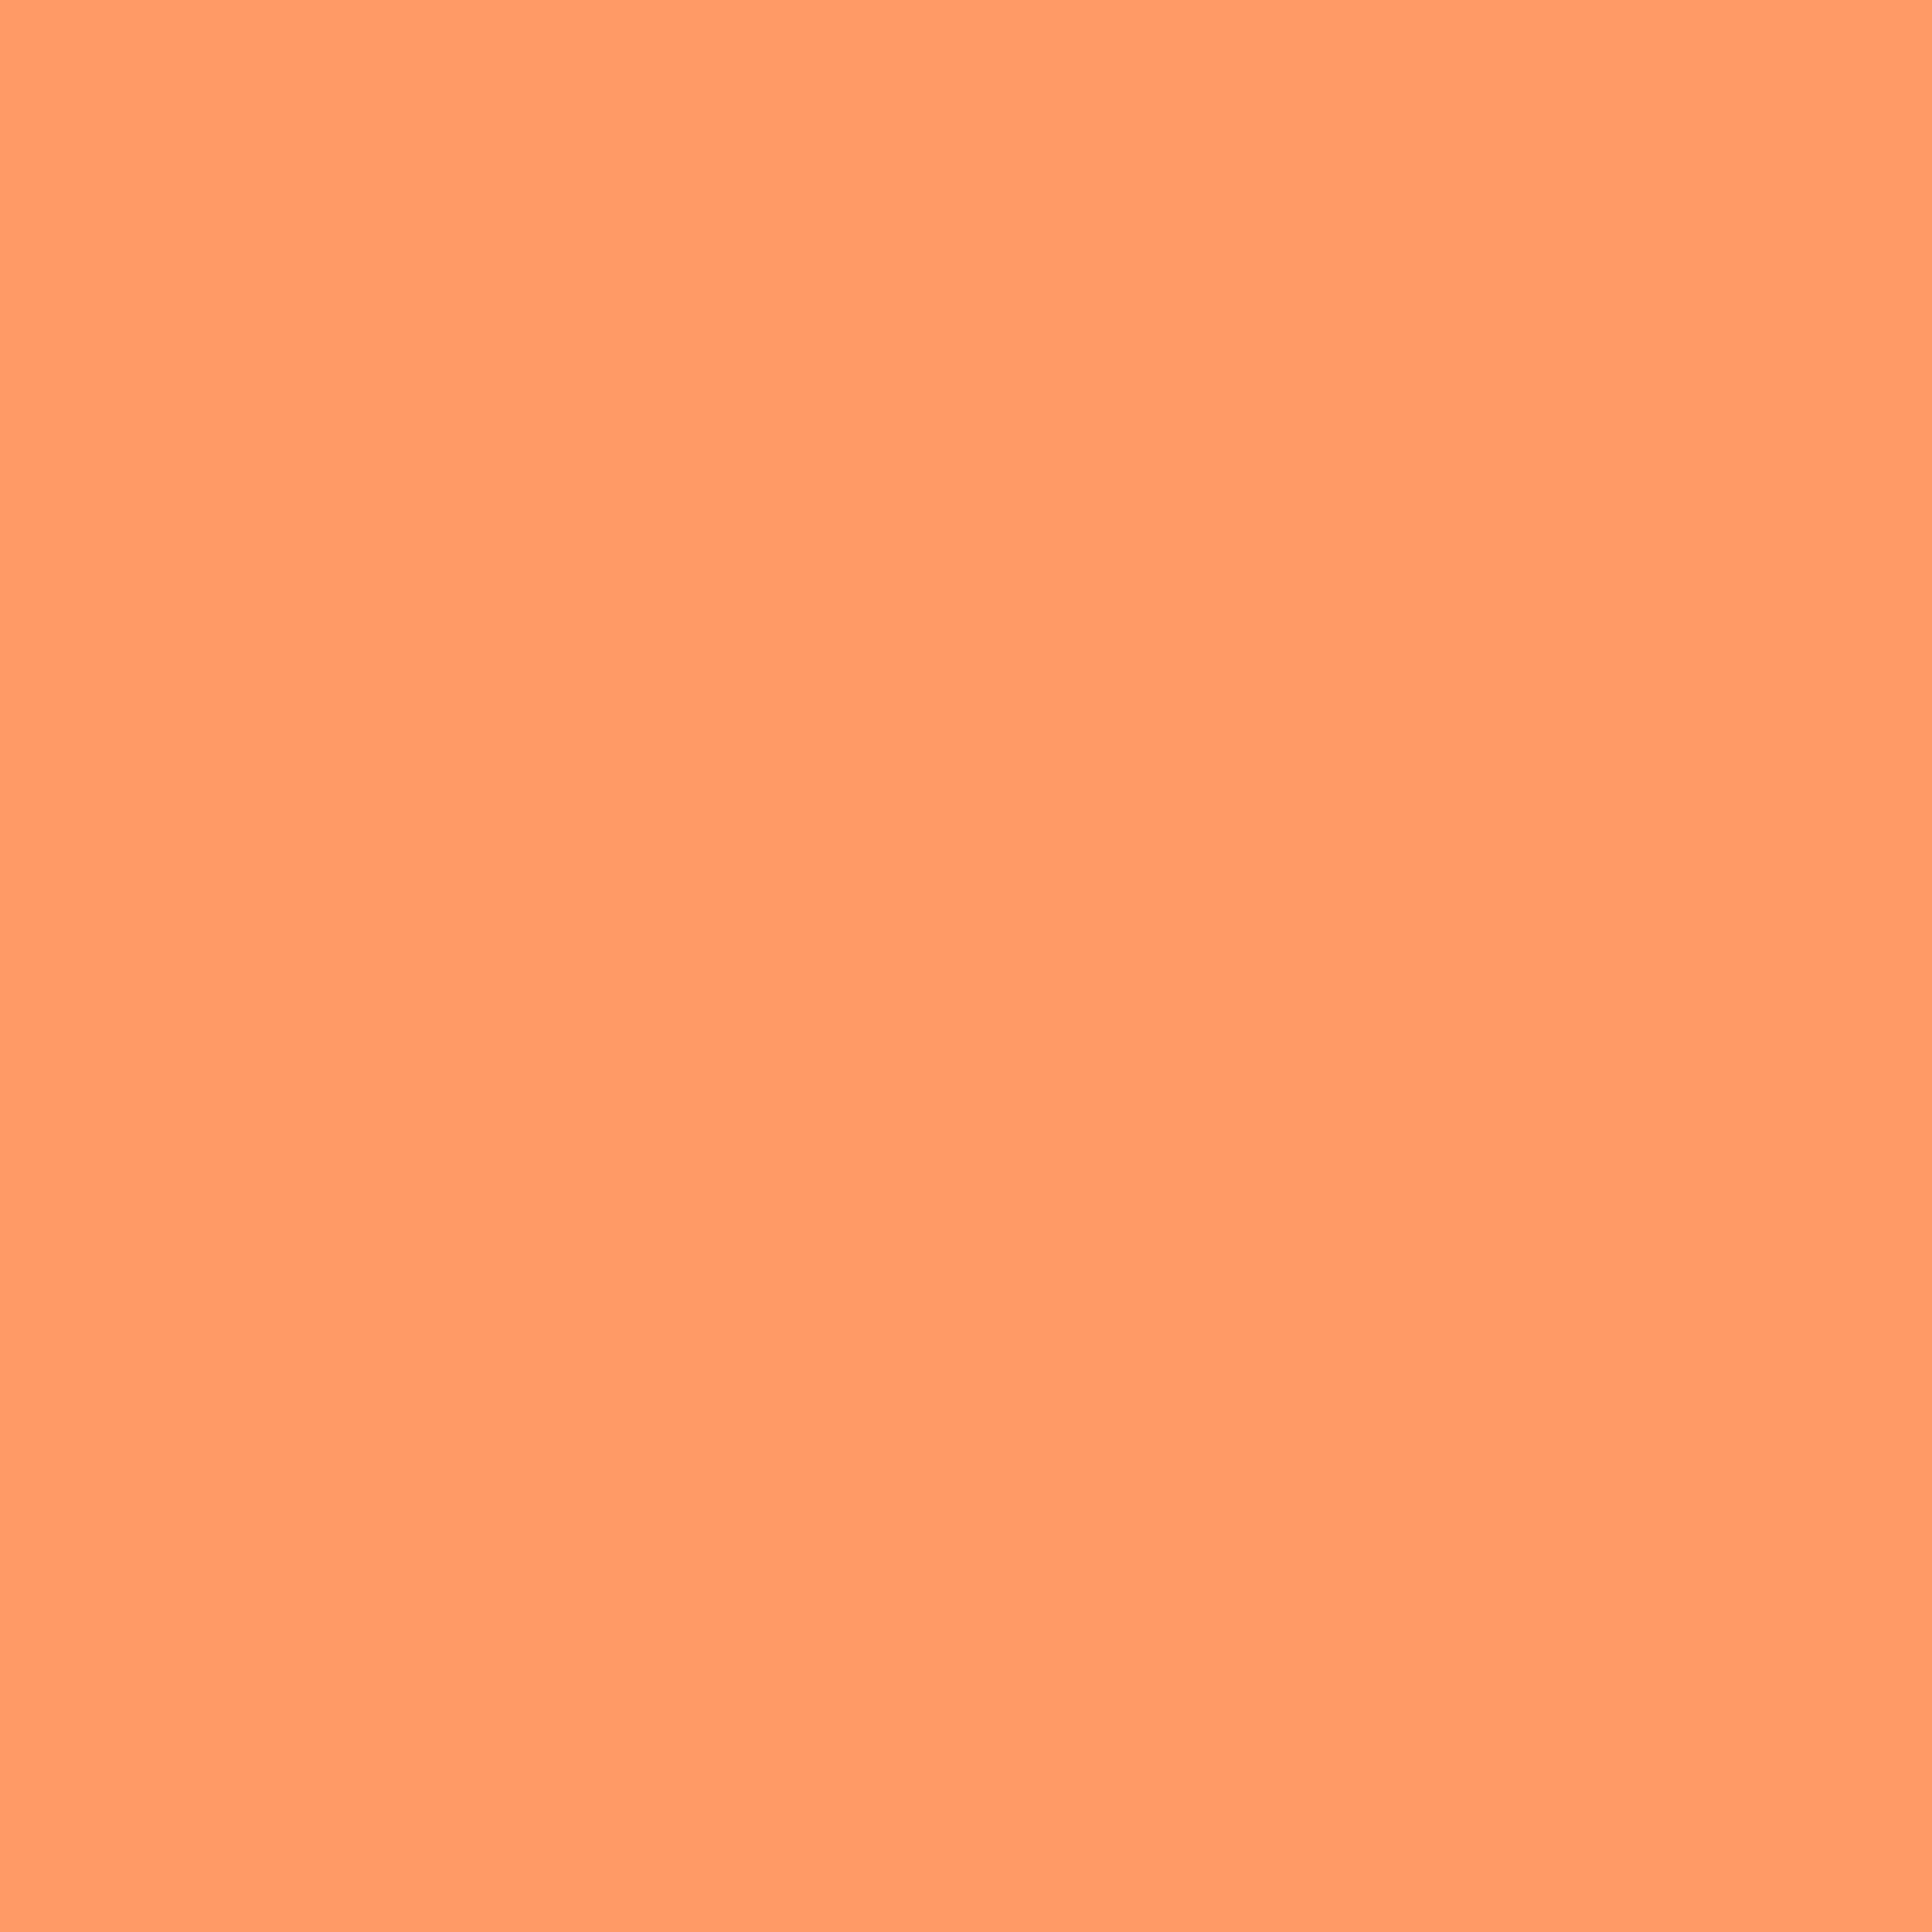 2732x2732 Pink-orange Solid Color Background